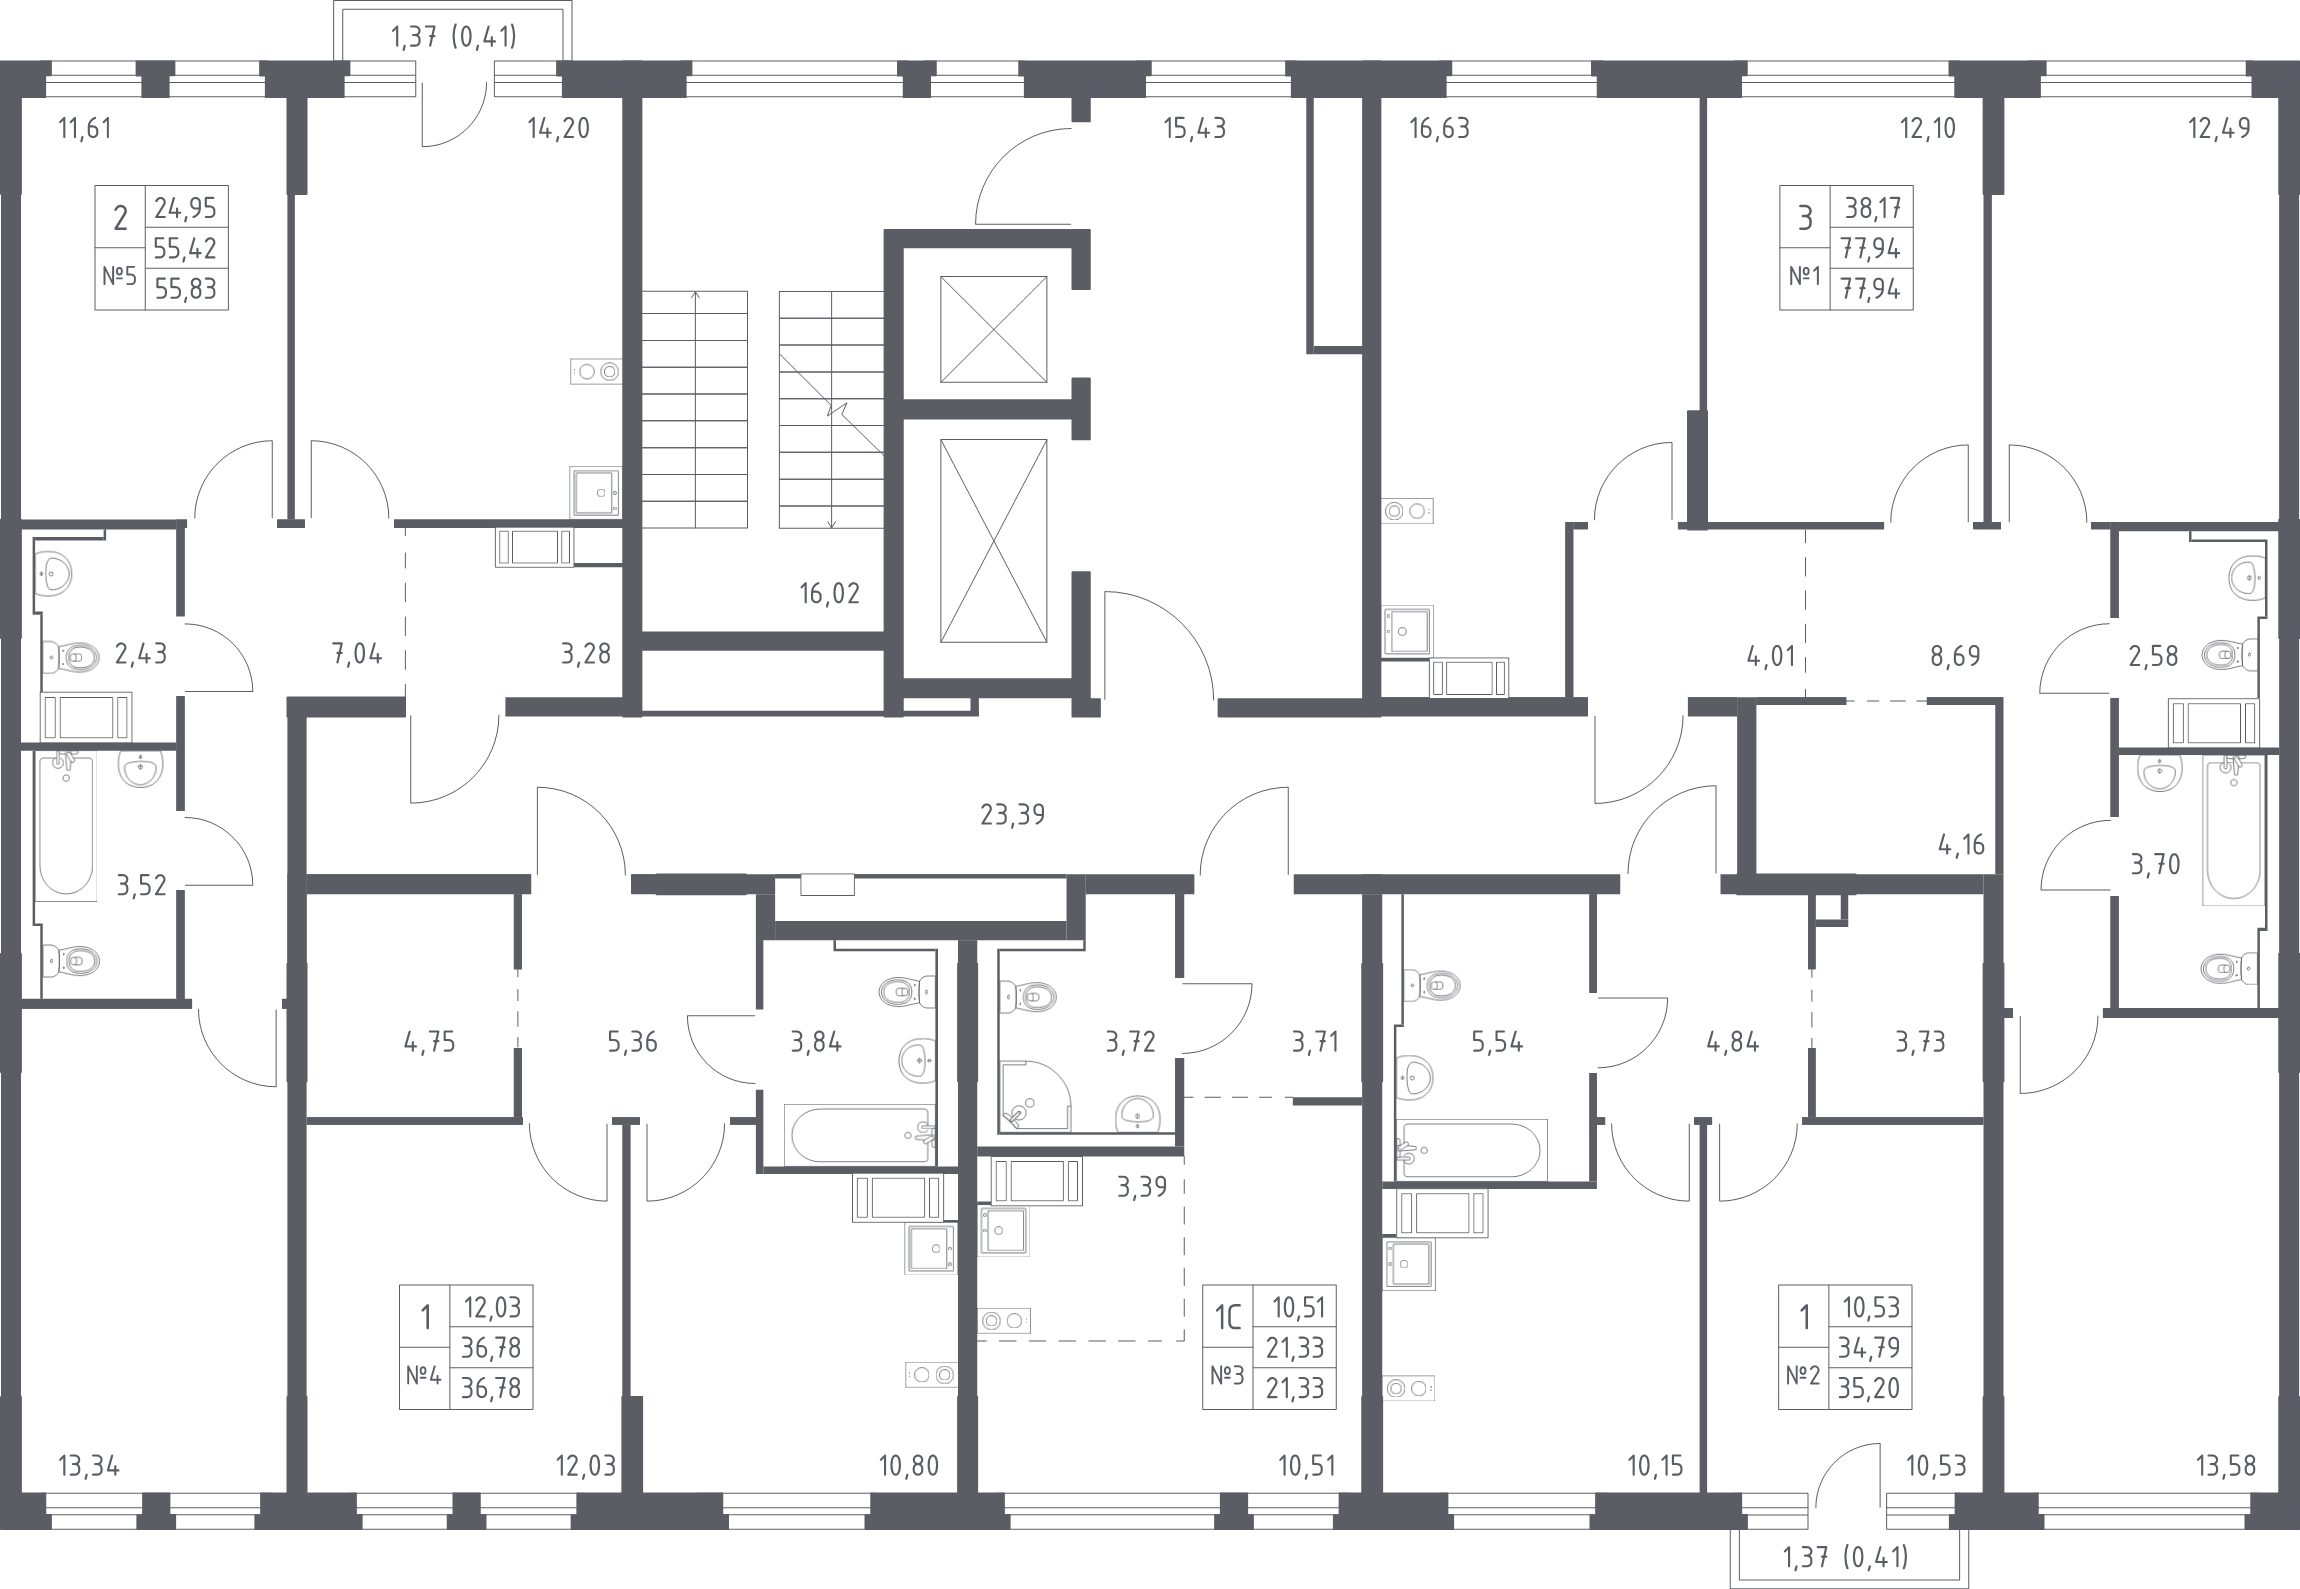 1-комнатная квартира, 36.78 м² в ЖК "Новое Колпино" - планировка этажа